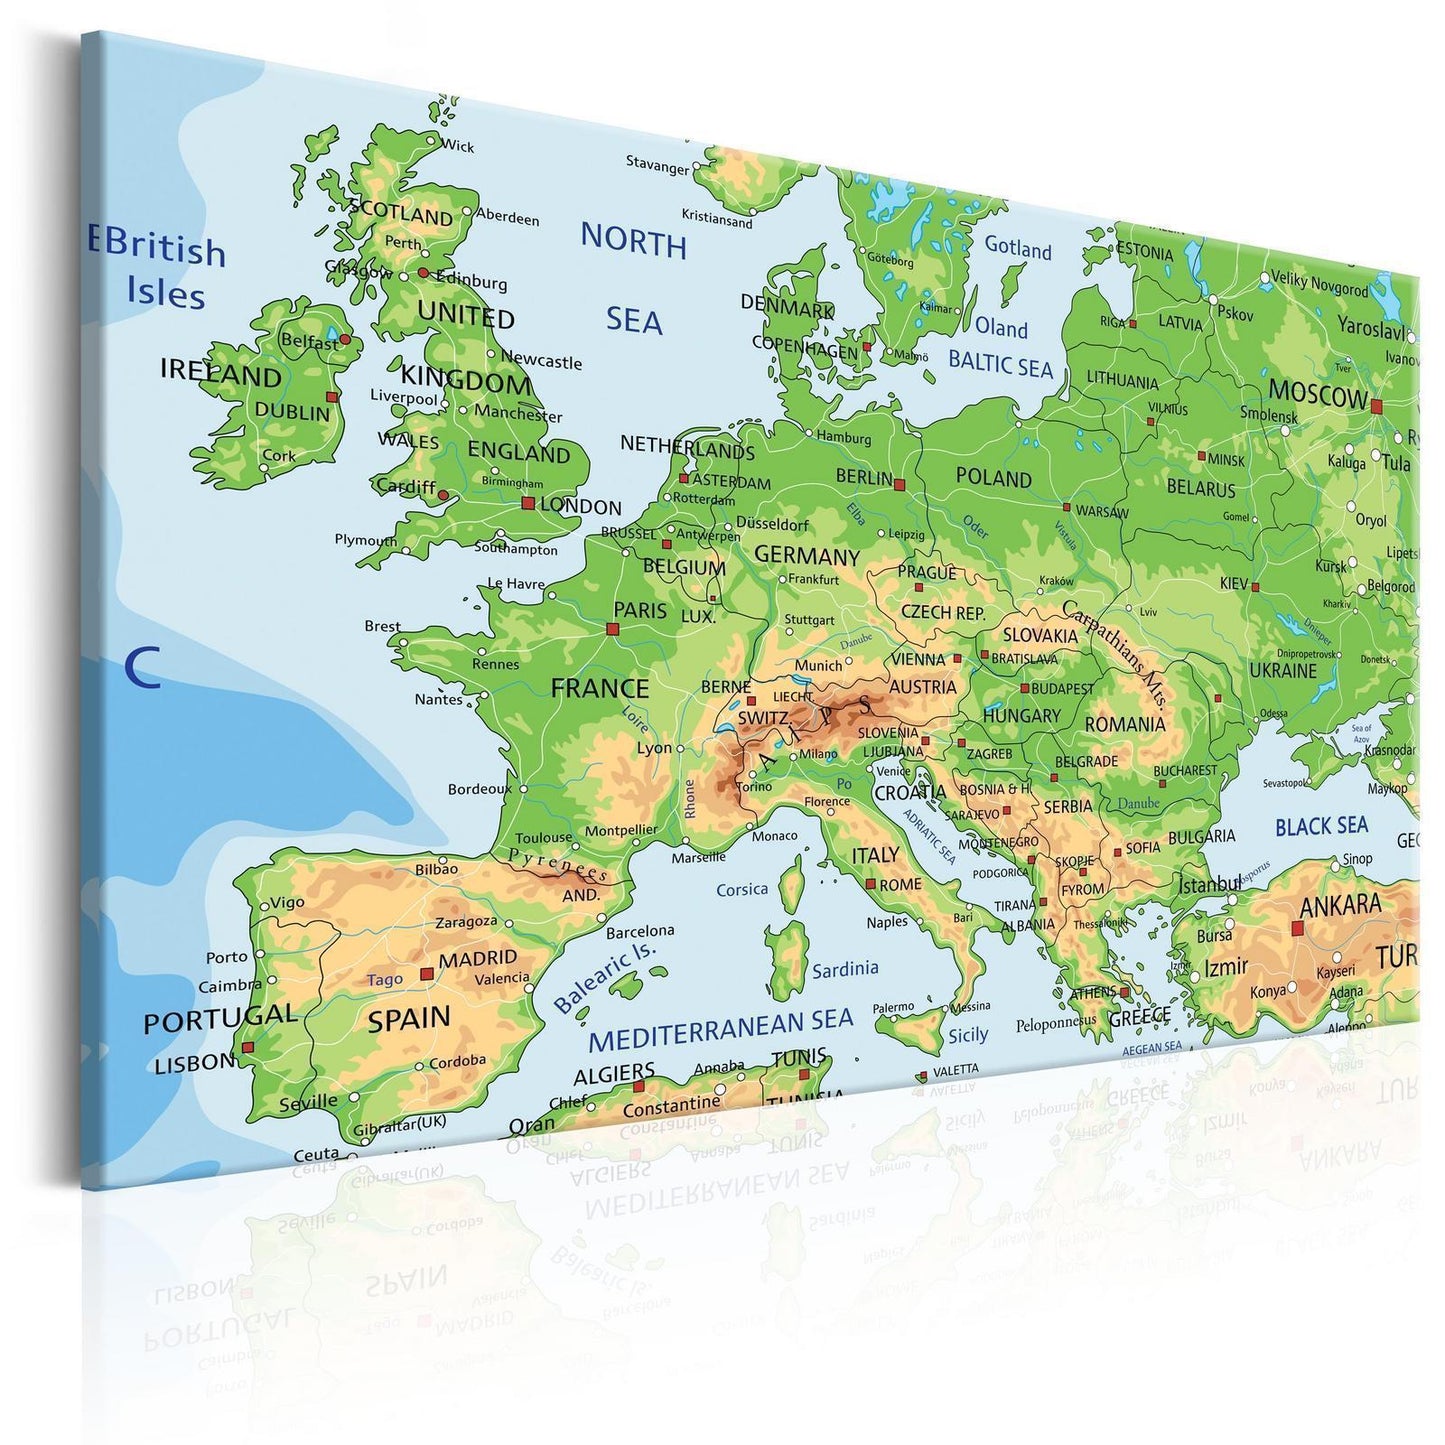 Schilderij - Map of Europe